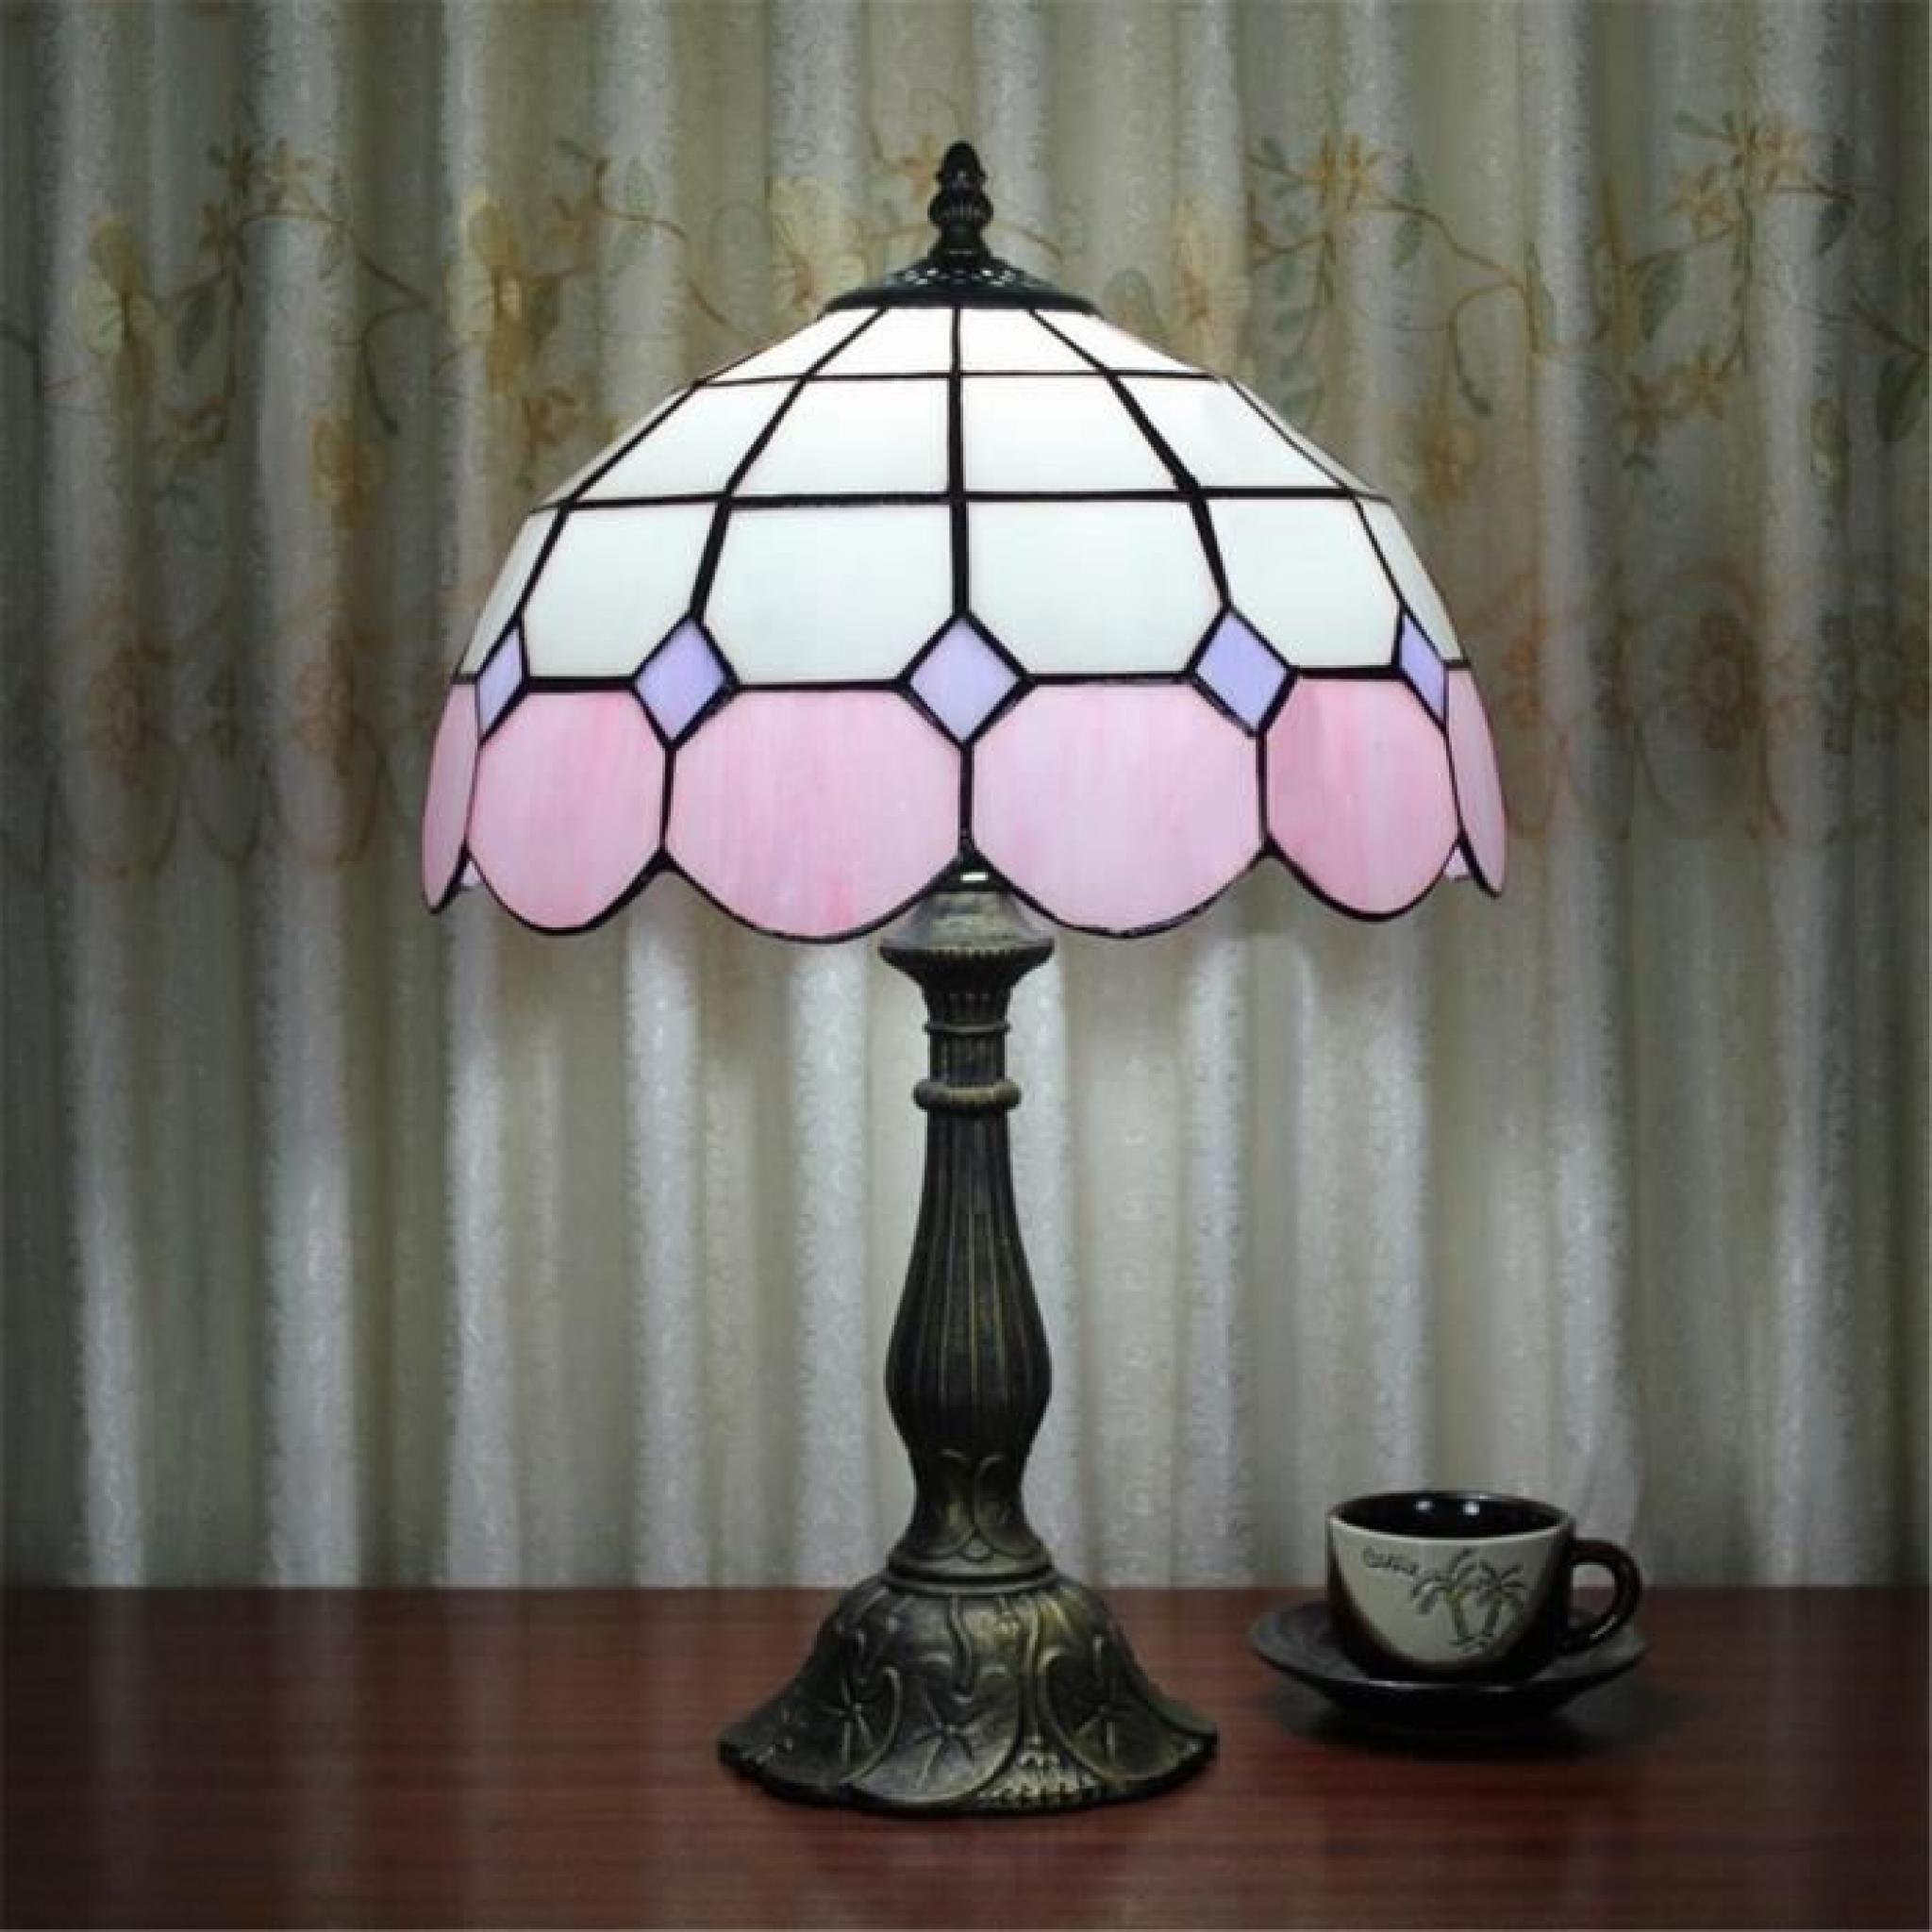 FerandHome Lampe A Poser Lampe de Chevet Luminaire Classique Magnifique Antique Chambre Bureau Eclairage Lilas